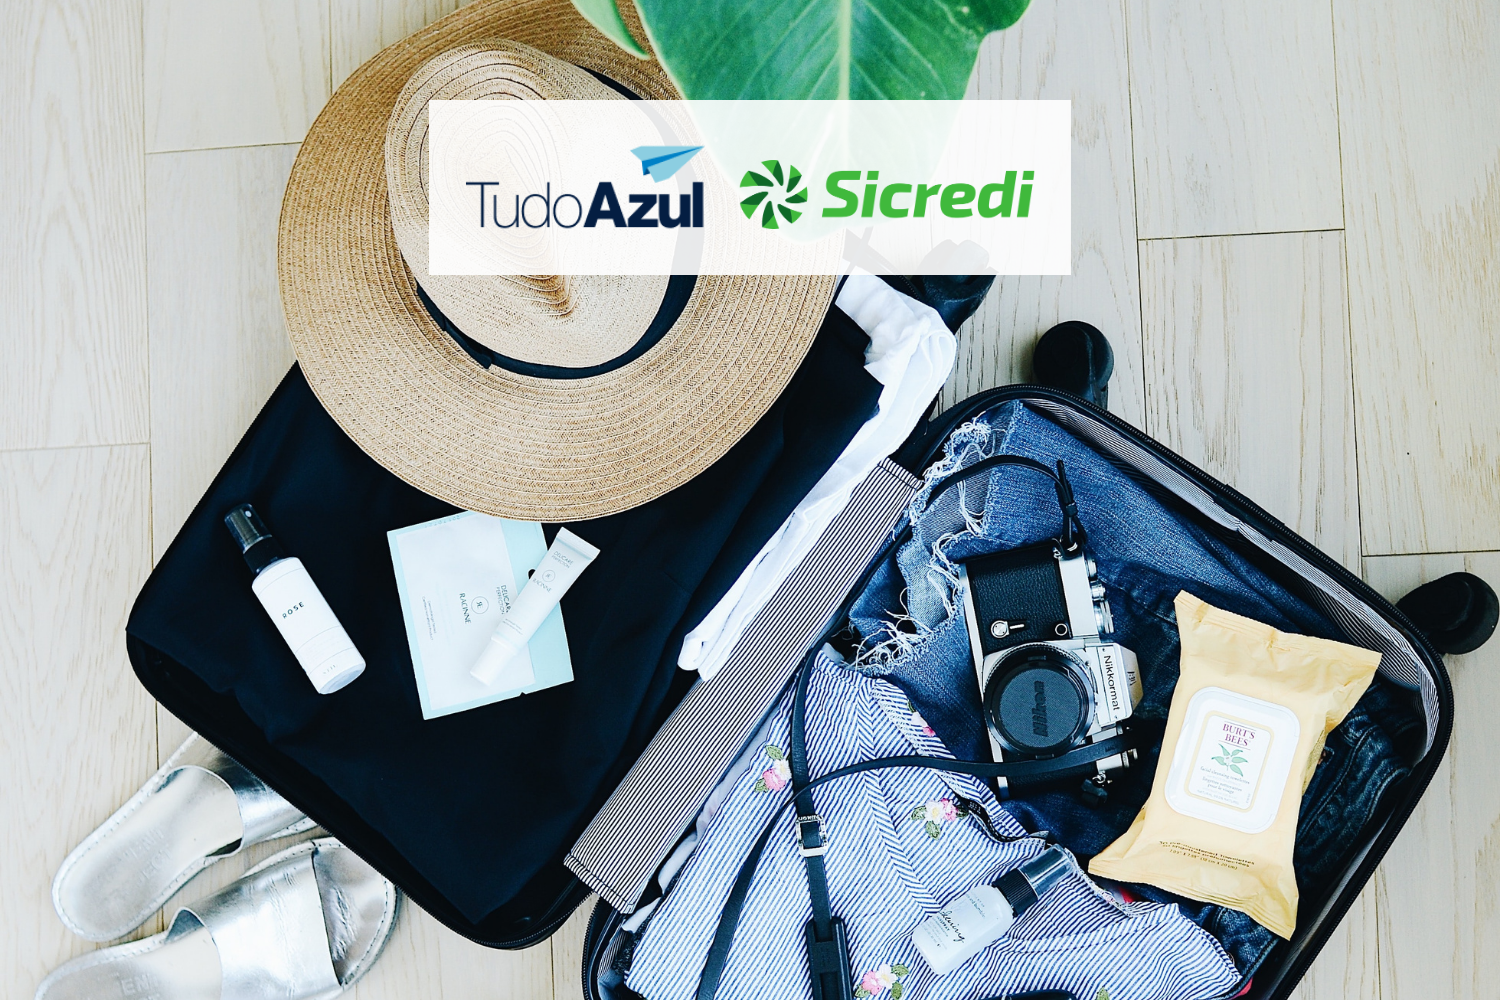 Mala de viagem com roupas e acessórios com logo TudoAzul e Sicredi